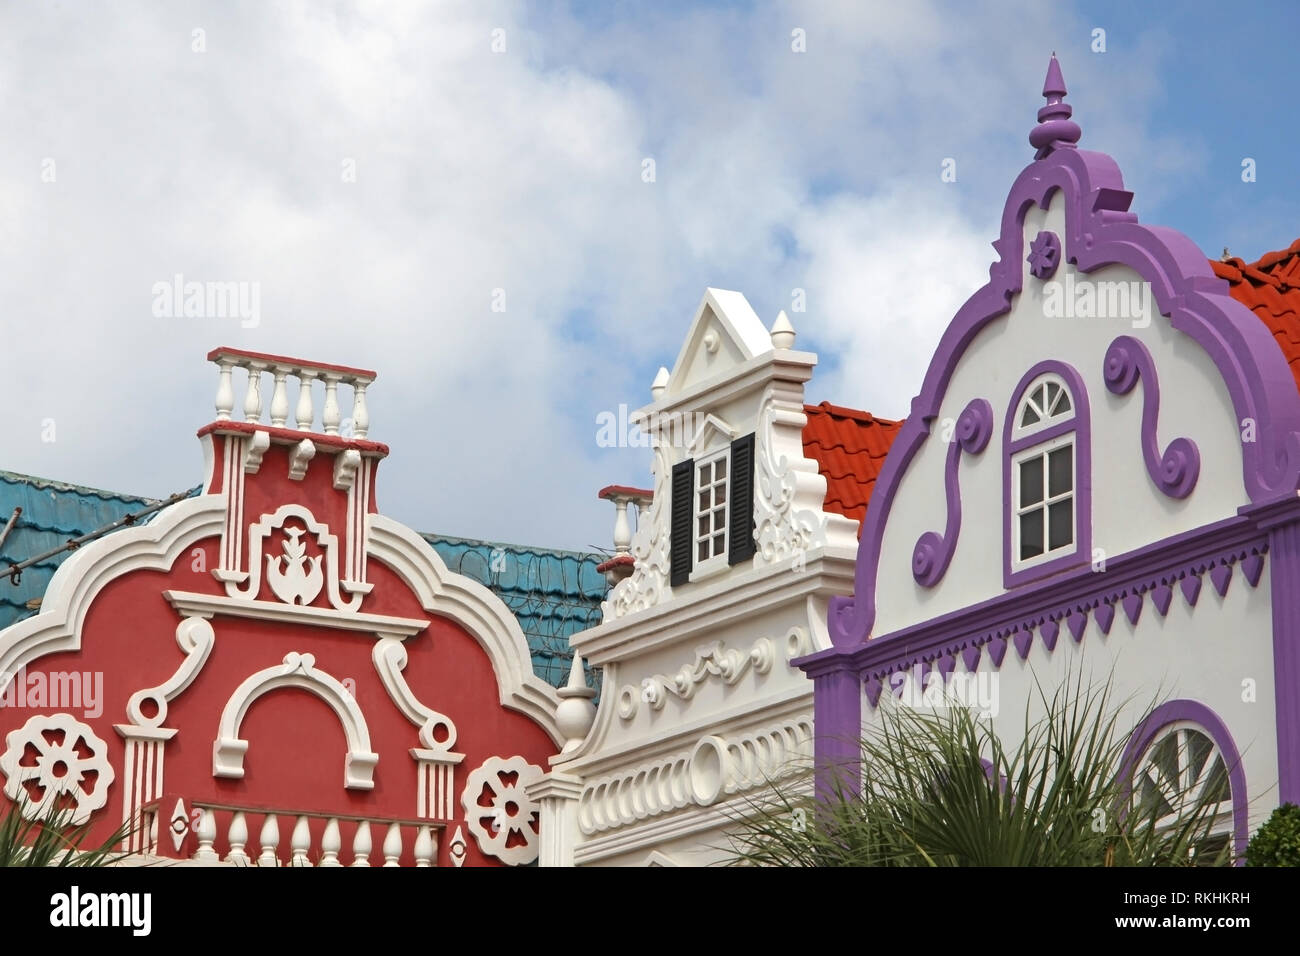 Les couleurs vives typiques de rouge, vert et violet architechture peint d'Aruba, Curaçao et Bonaire, des Caraïbes. Banque D'Images